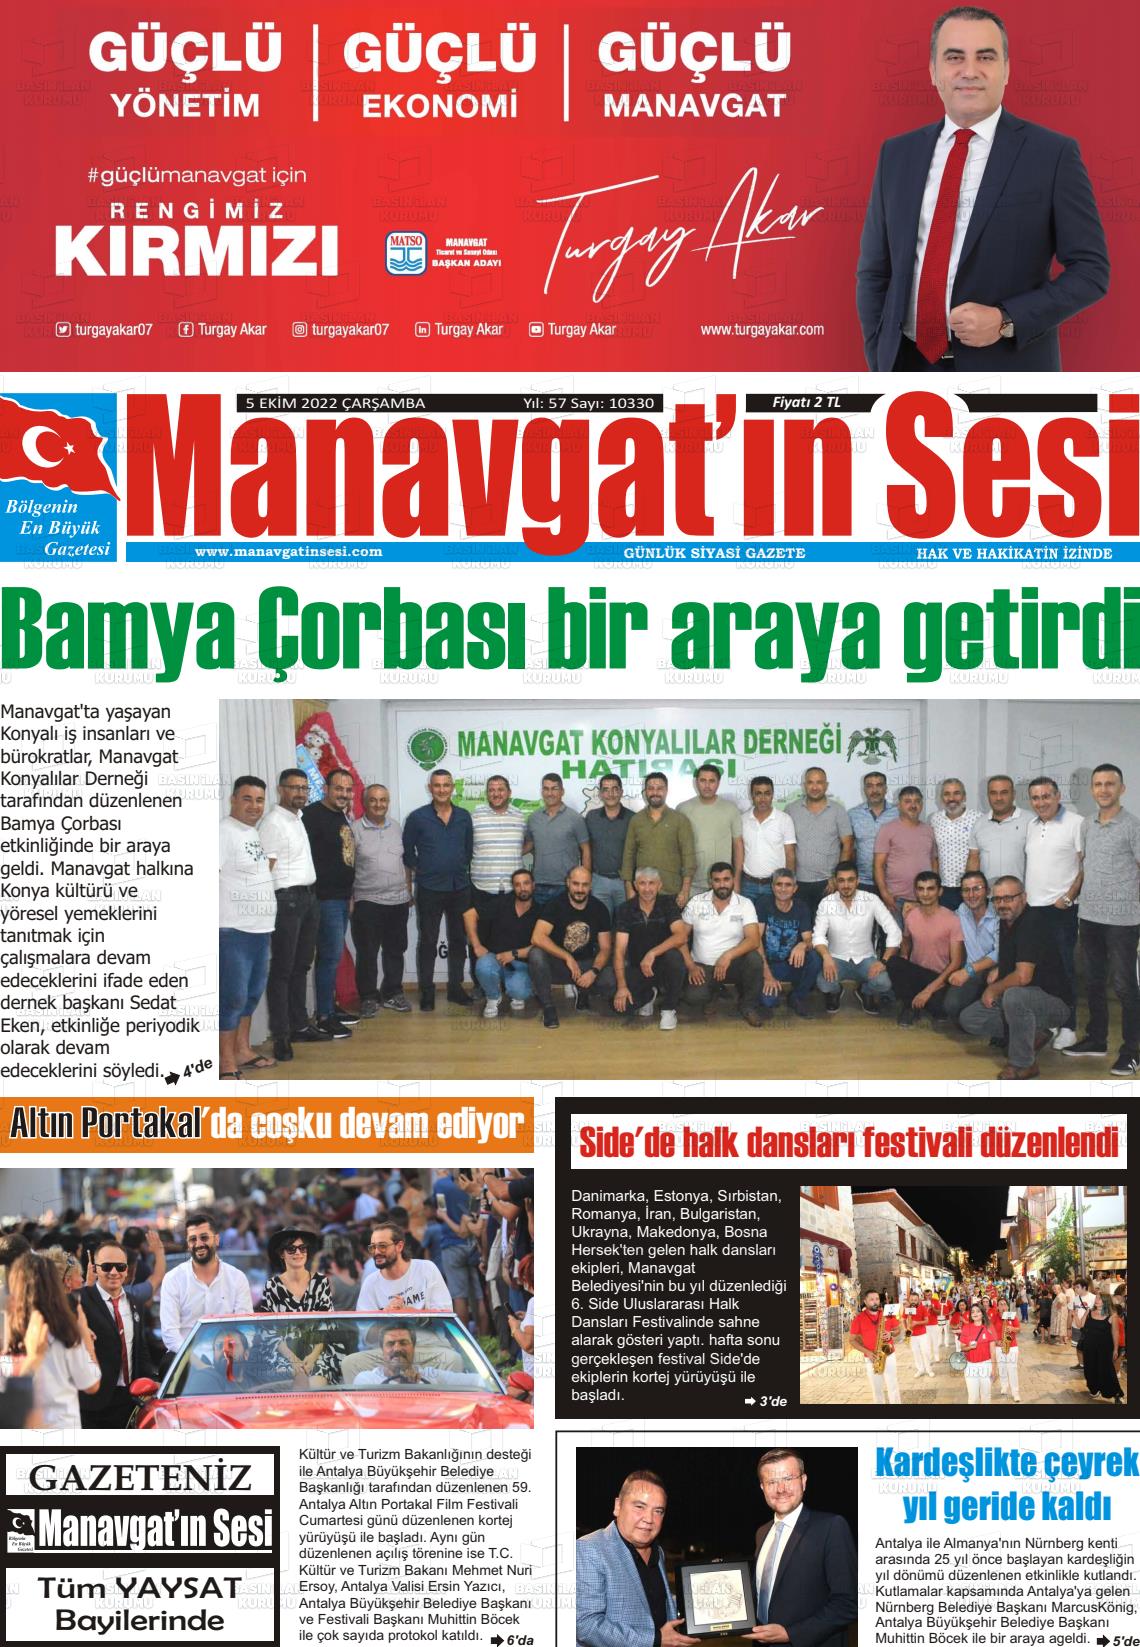 05 Ekim 2022 Manavgat'ın Sesi Gazete Manşeti